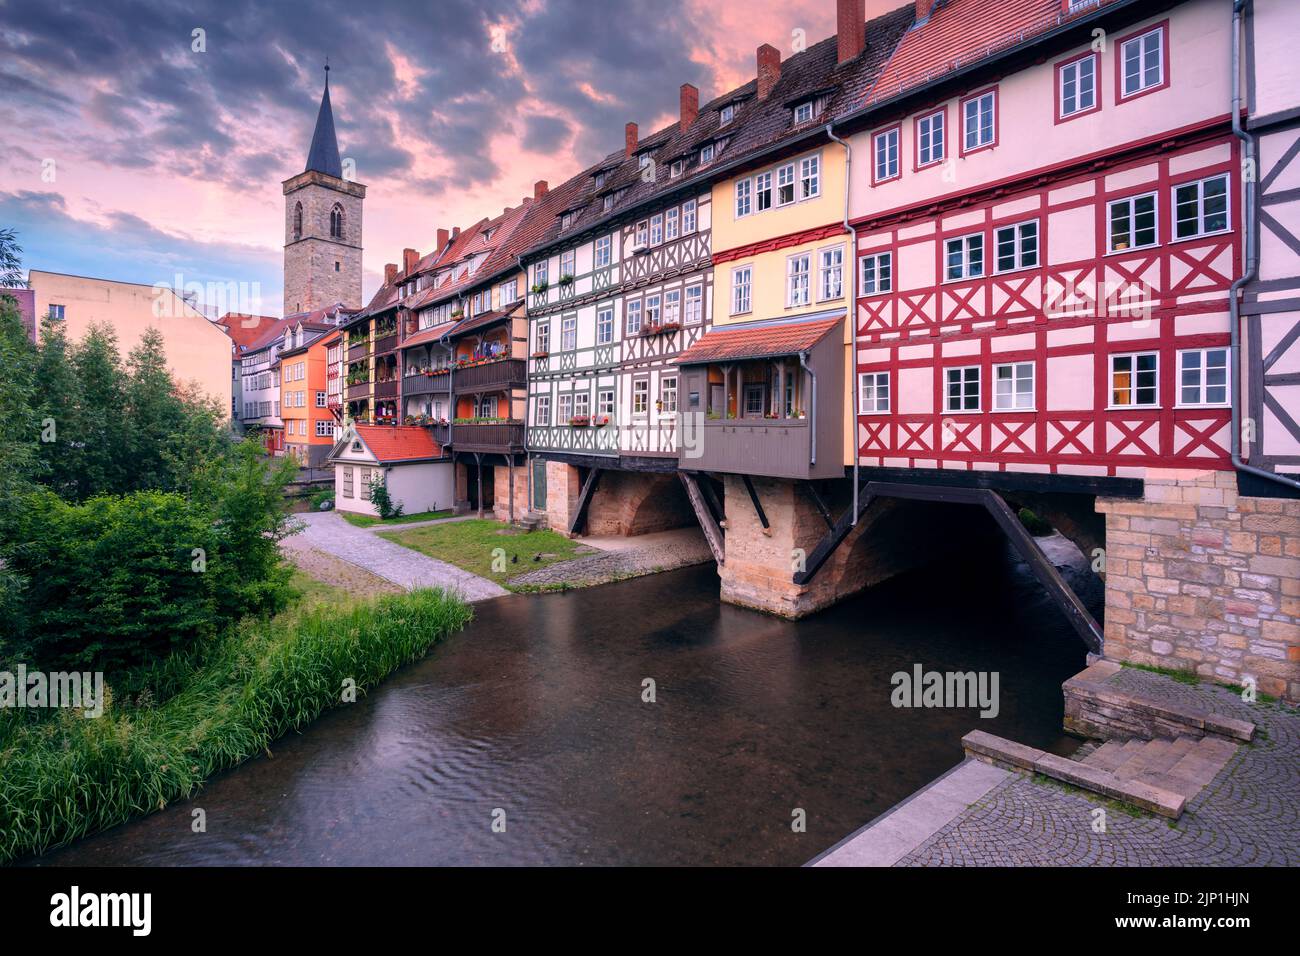 Erfurt, Alemania. Imagen del paisaje urbano del centro de Erfurt, Alemania, con el puente Merchant's Bridge al amanecer de verano. Foto de stock